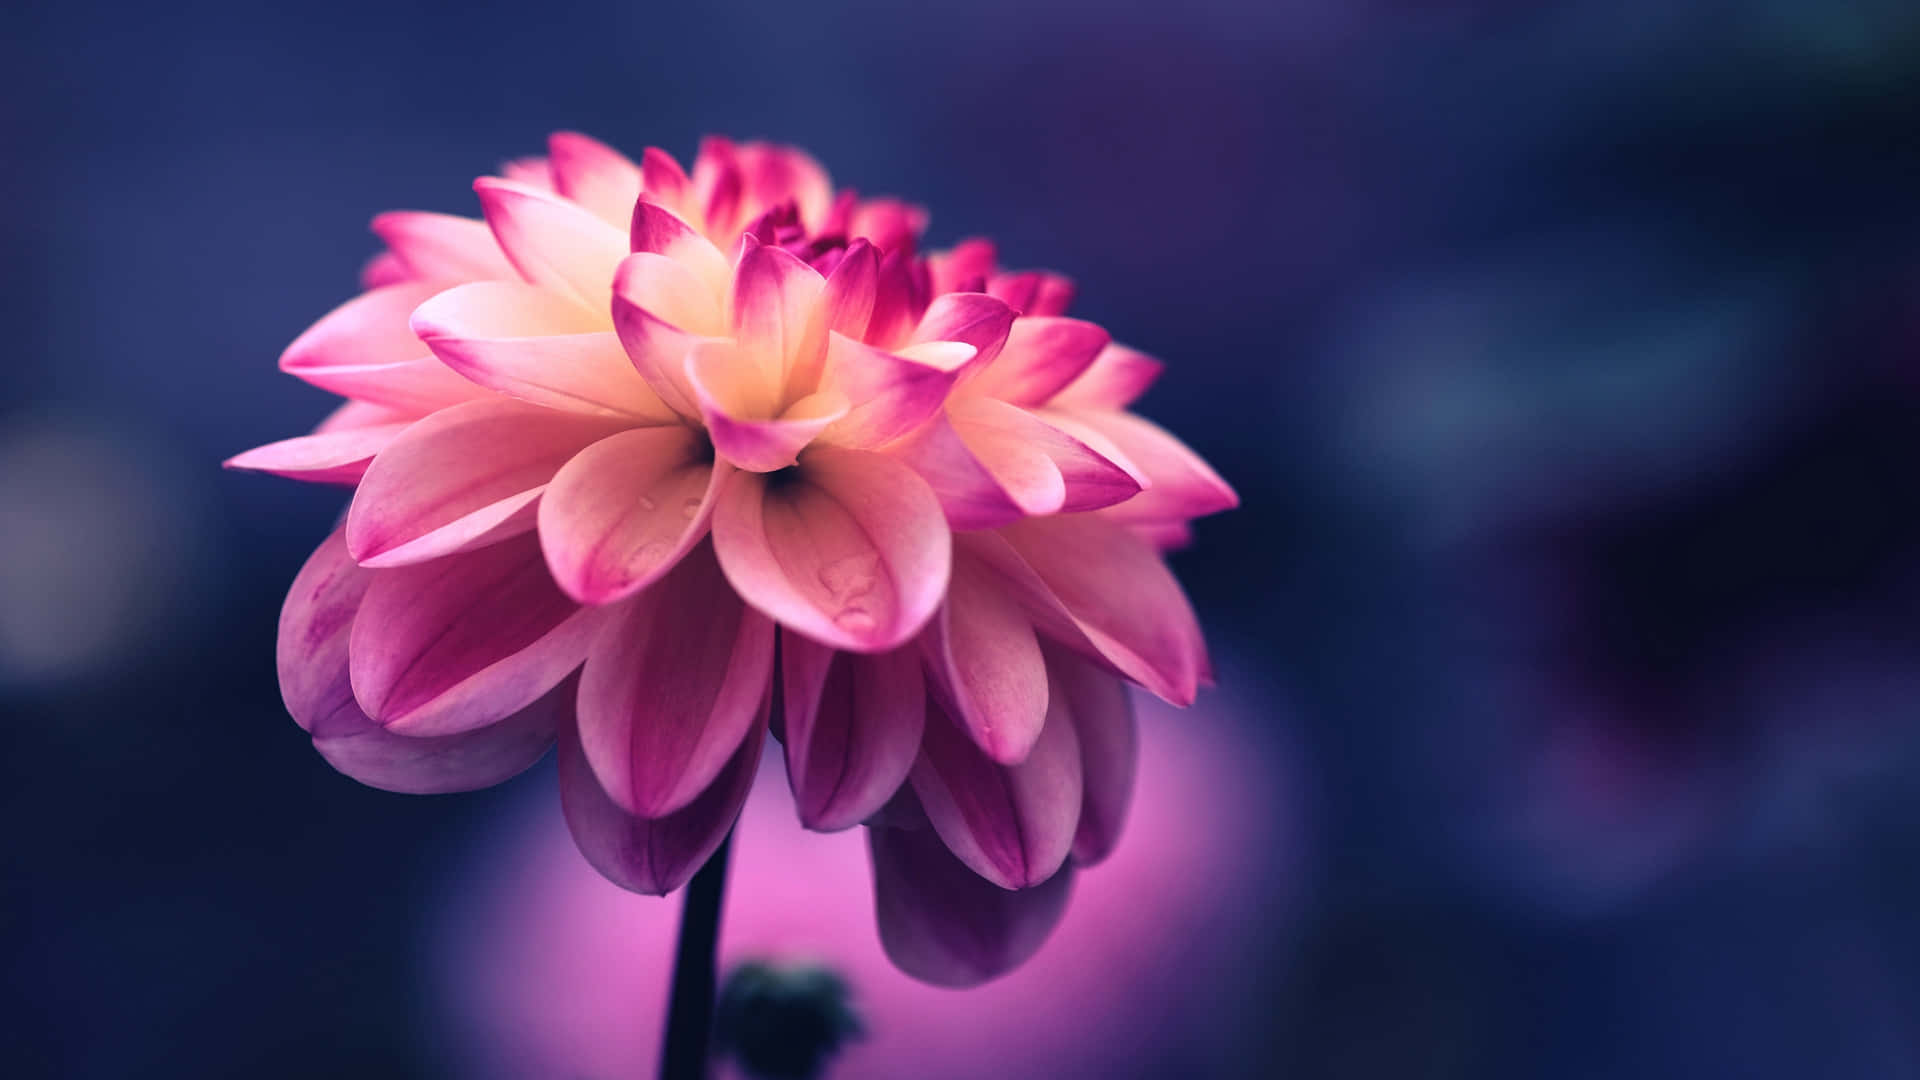 Hoa Dahlia được biết đến là loài hoa đẹp với nhiều màu sắc và hình dạng đa dạng. Những bức ảnh về hoa Dahlia sẽ khiến bạn trầm trồ và ngẩn ngơ với vẻ đẹp tuyệt diệu mà chúng mang lại. Hãy cùng thưởng thức loài hoa này qua các hình ảnh đầy sắc màu.